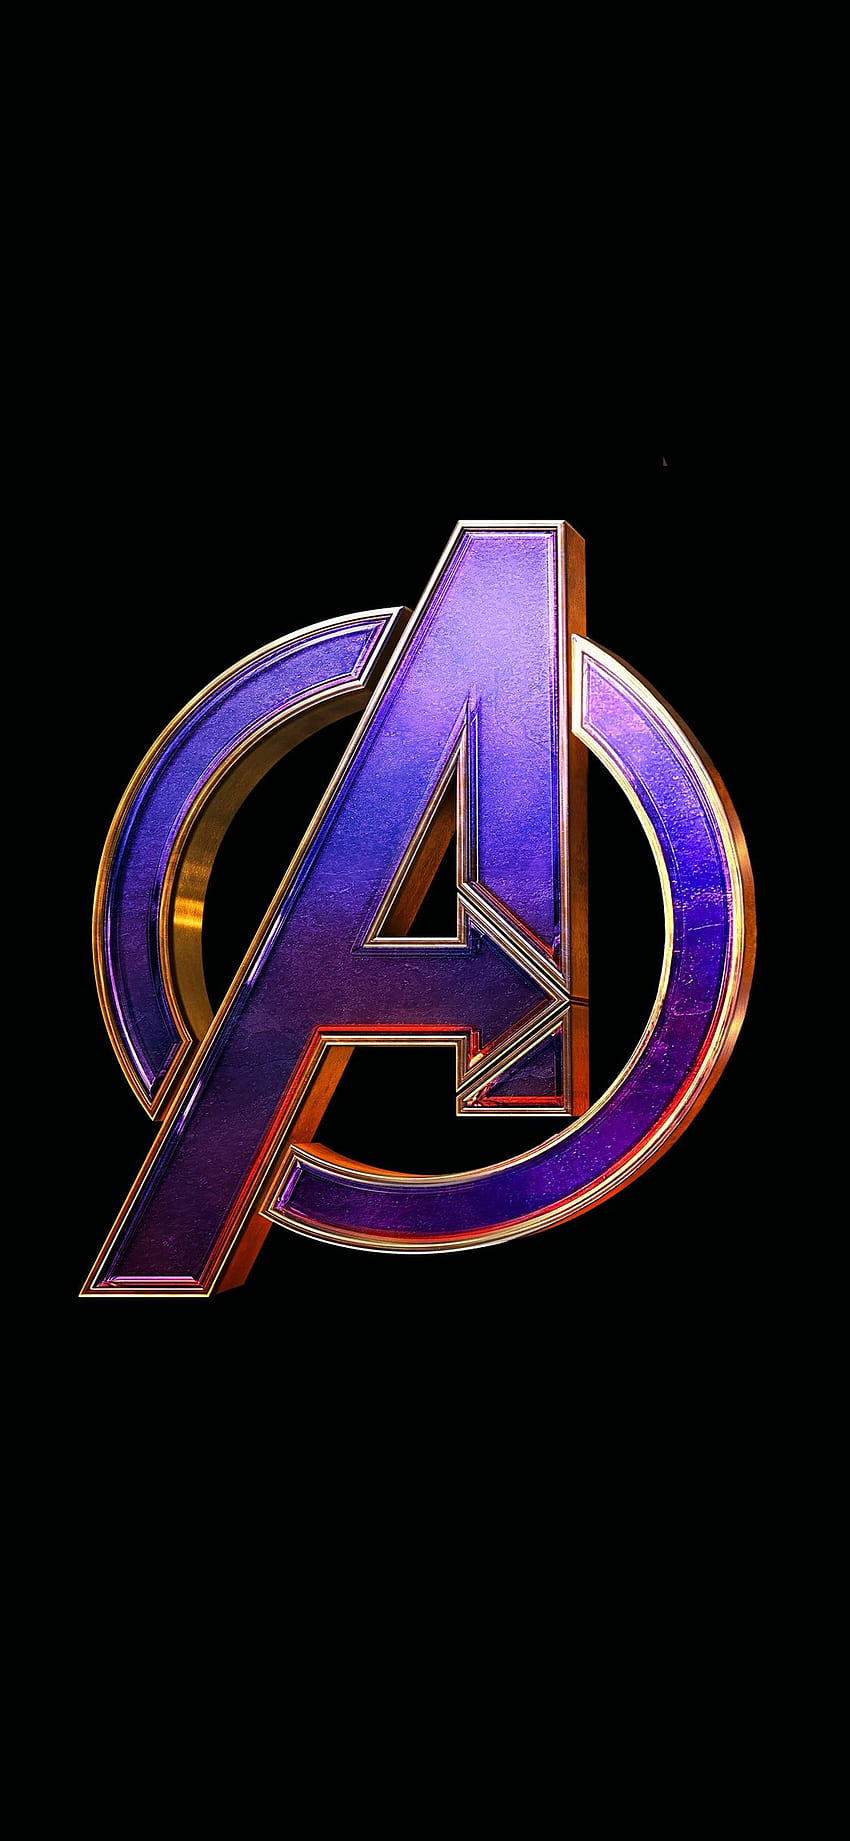 Avengers: Endgame' dominates worldwide box office - YouTube